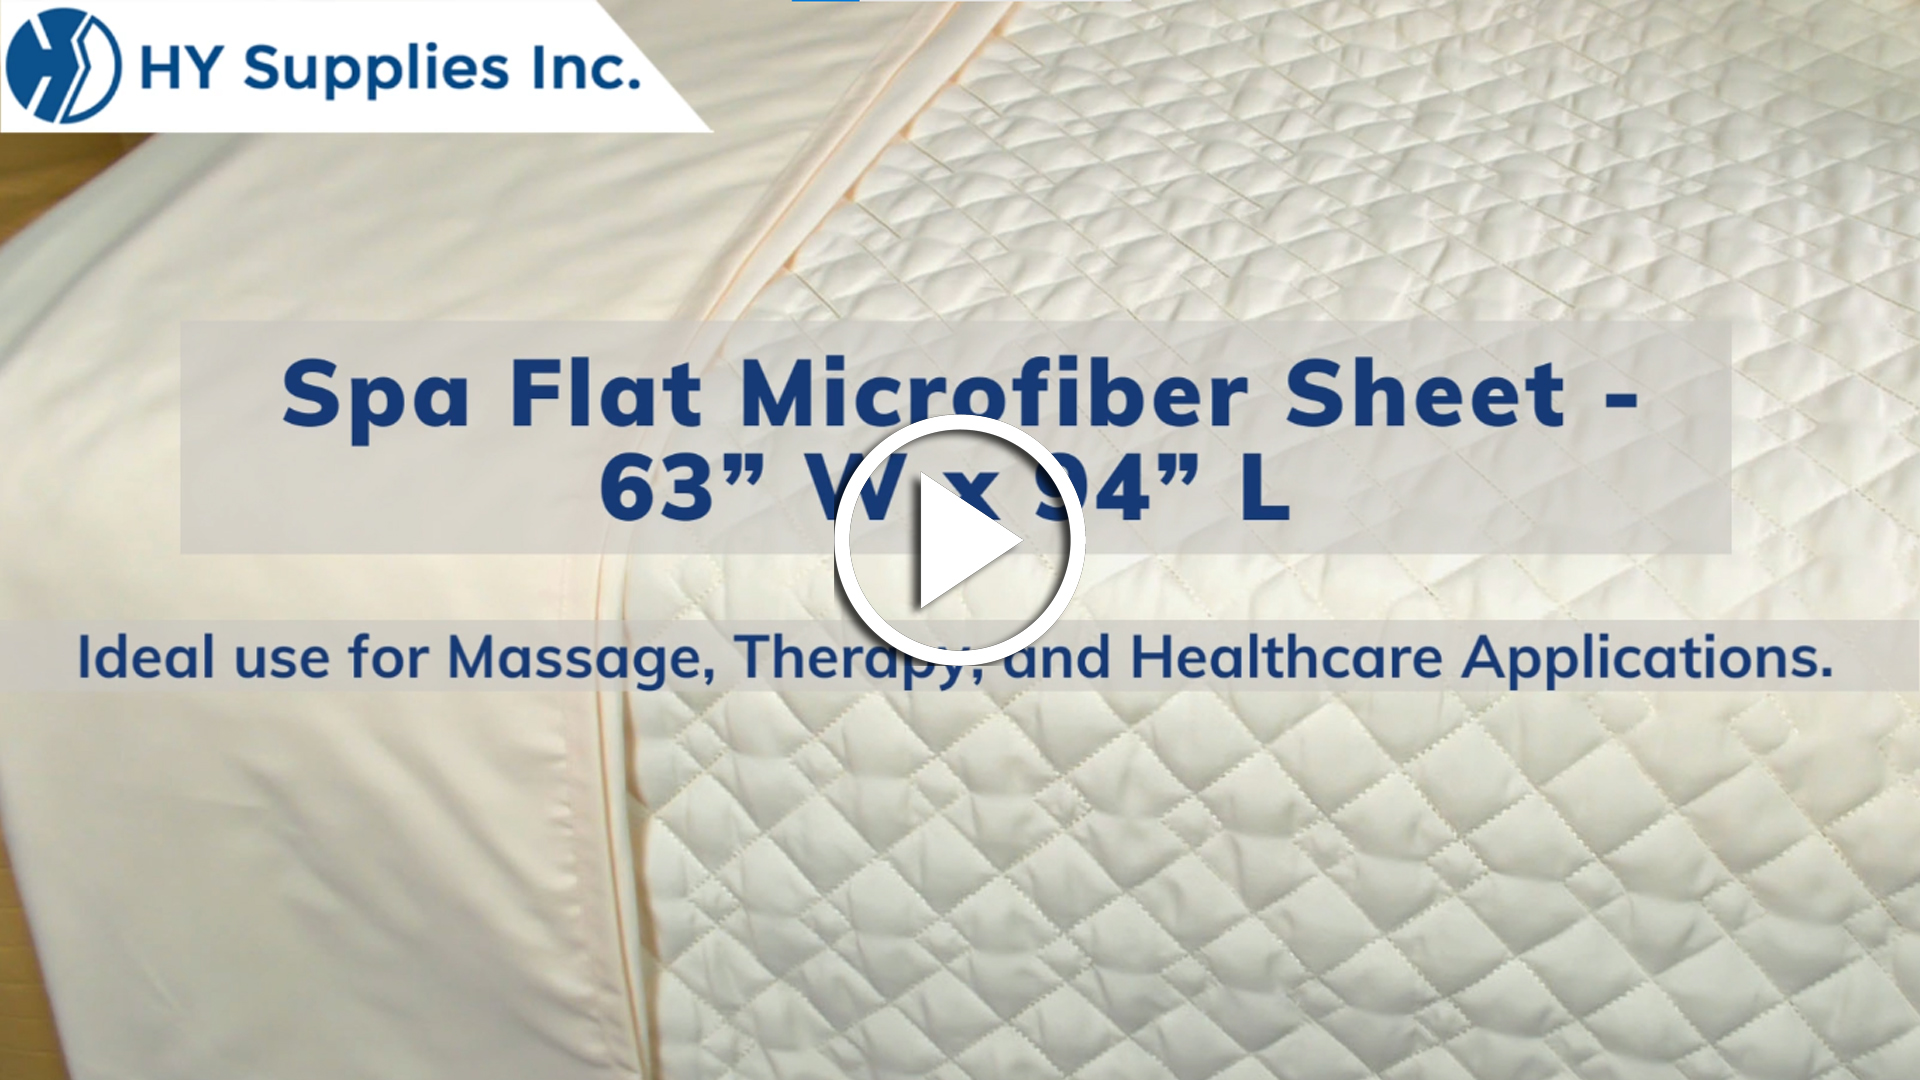 Spa Flat Microfiber Sheet - 63” W x 94” L 